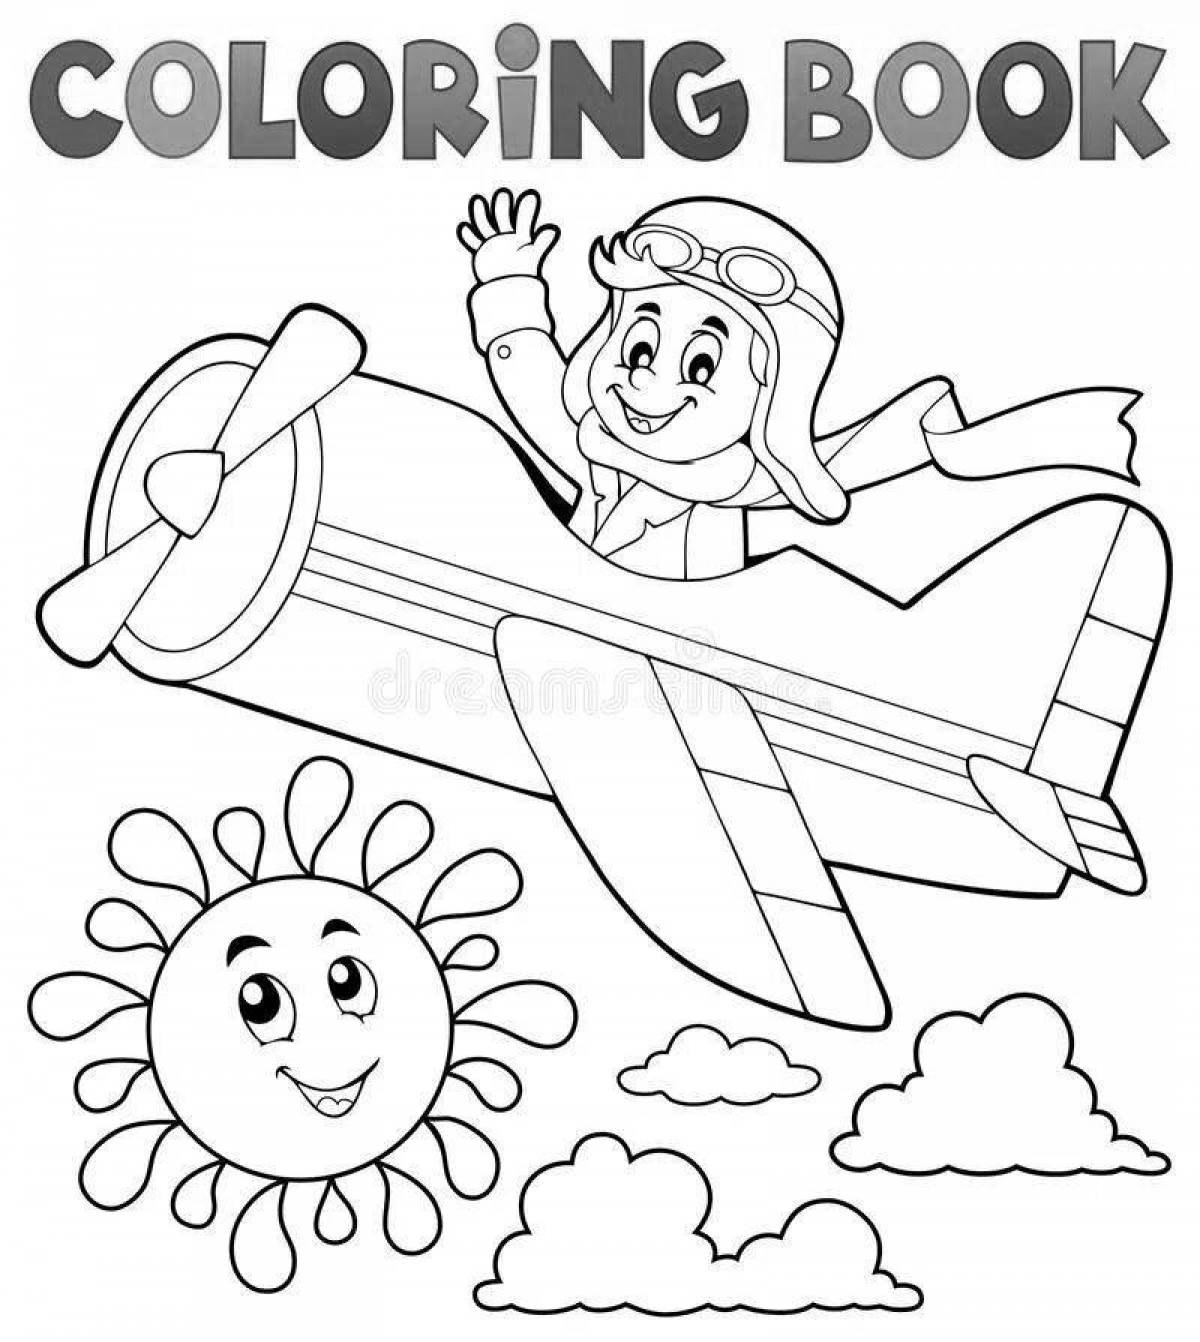 Игривая страница раскраски пилота для детей